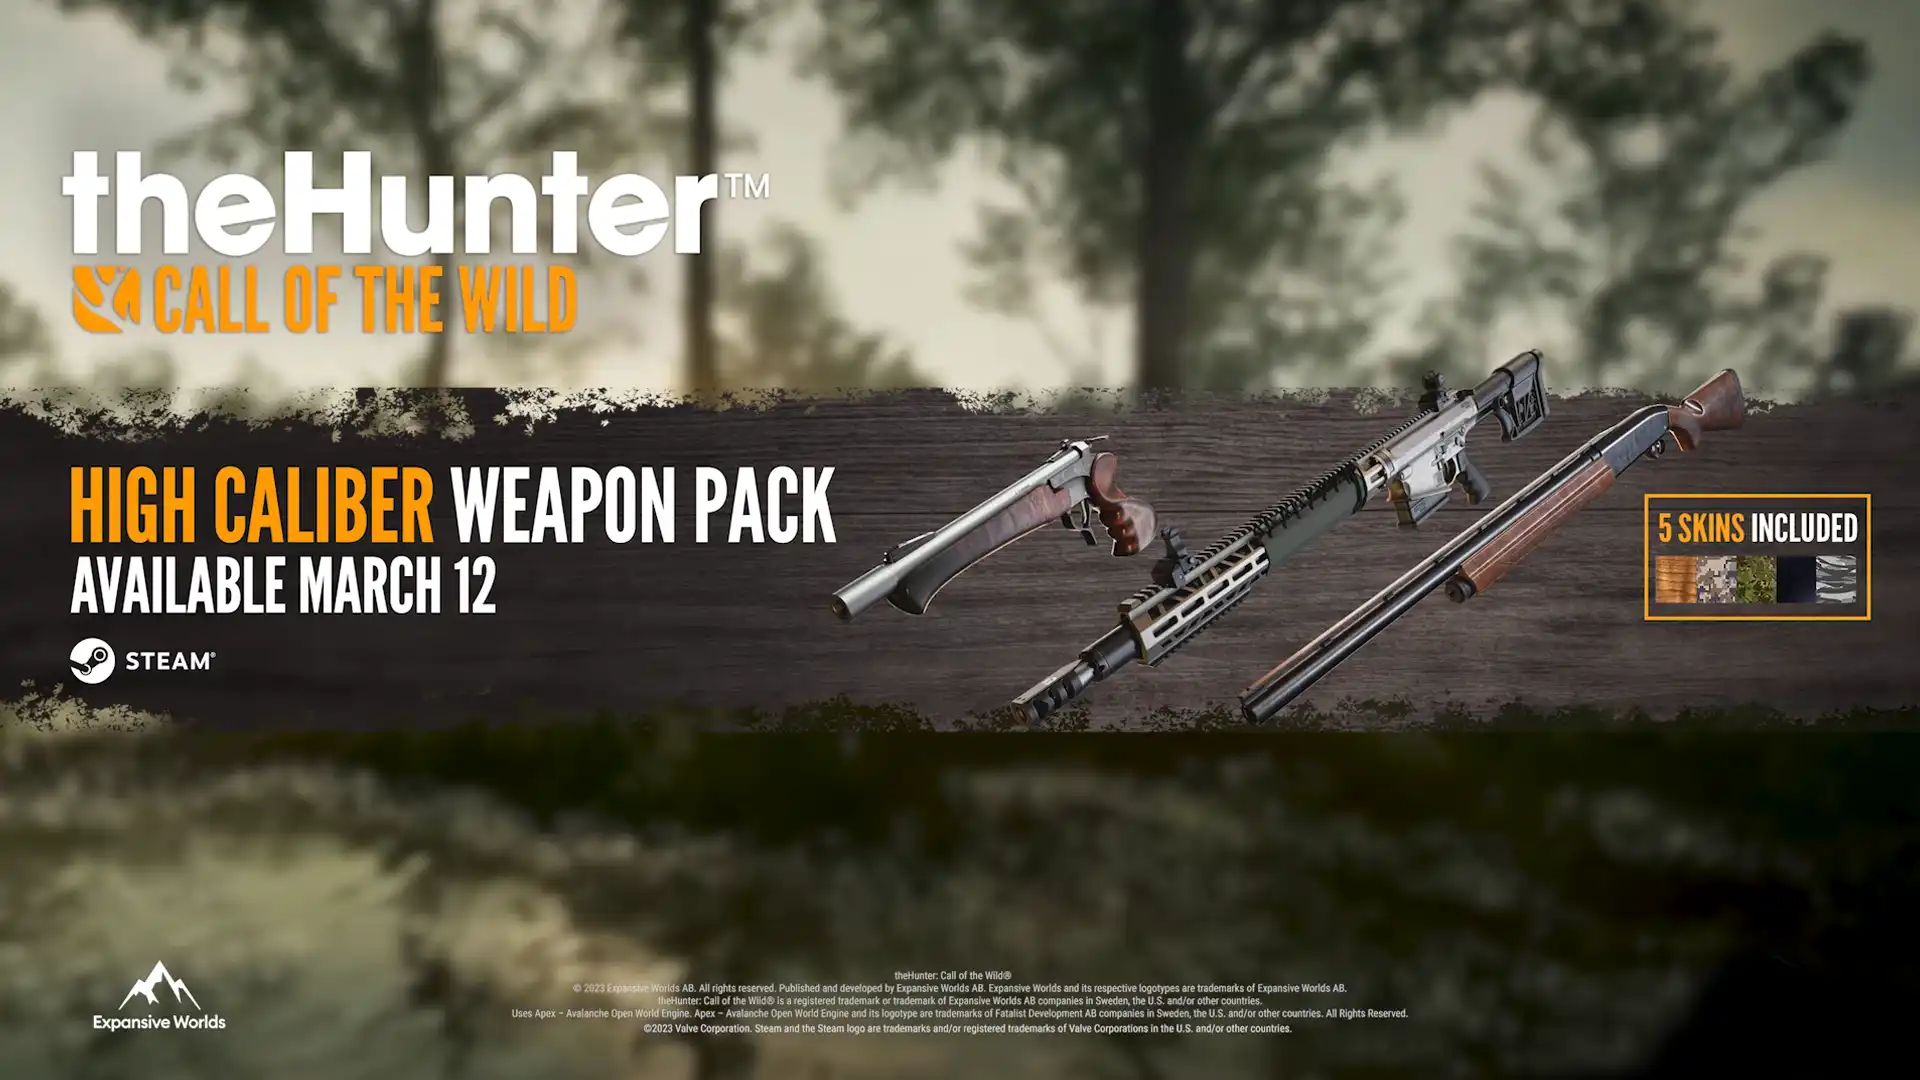 Новый High Caliber Weapon Pack для theHunter: Call of the Wild со стрелковым оружием и пятью расцветками, доступный с 12 марта на Steam.